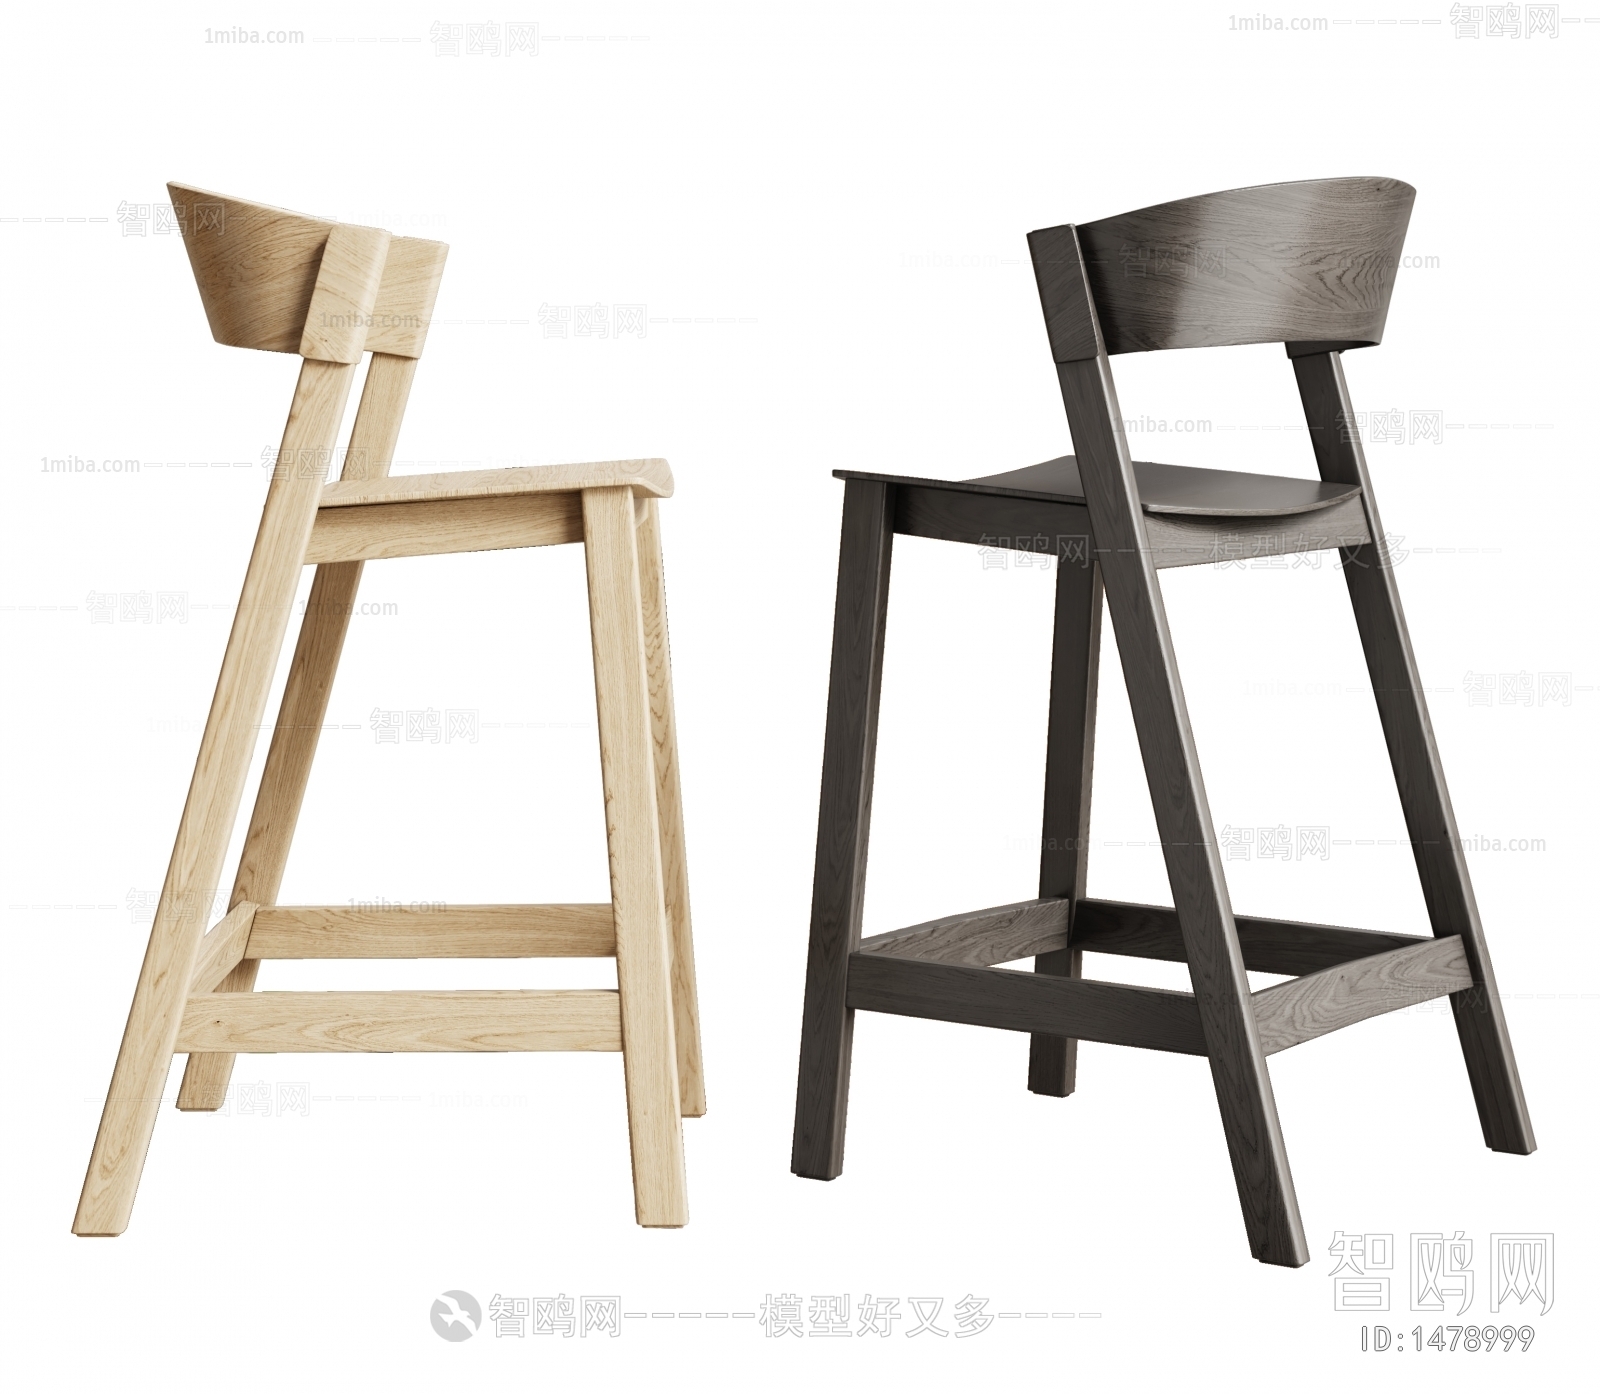 Wabi-sabi Style Bar Chair